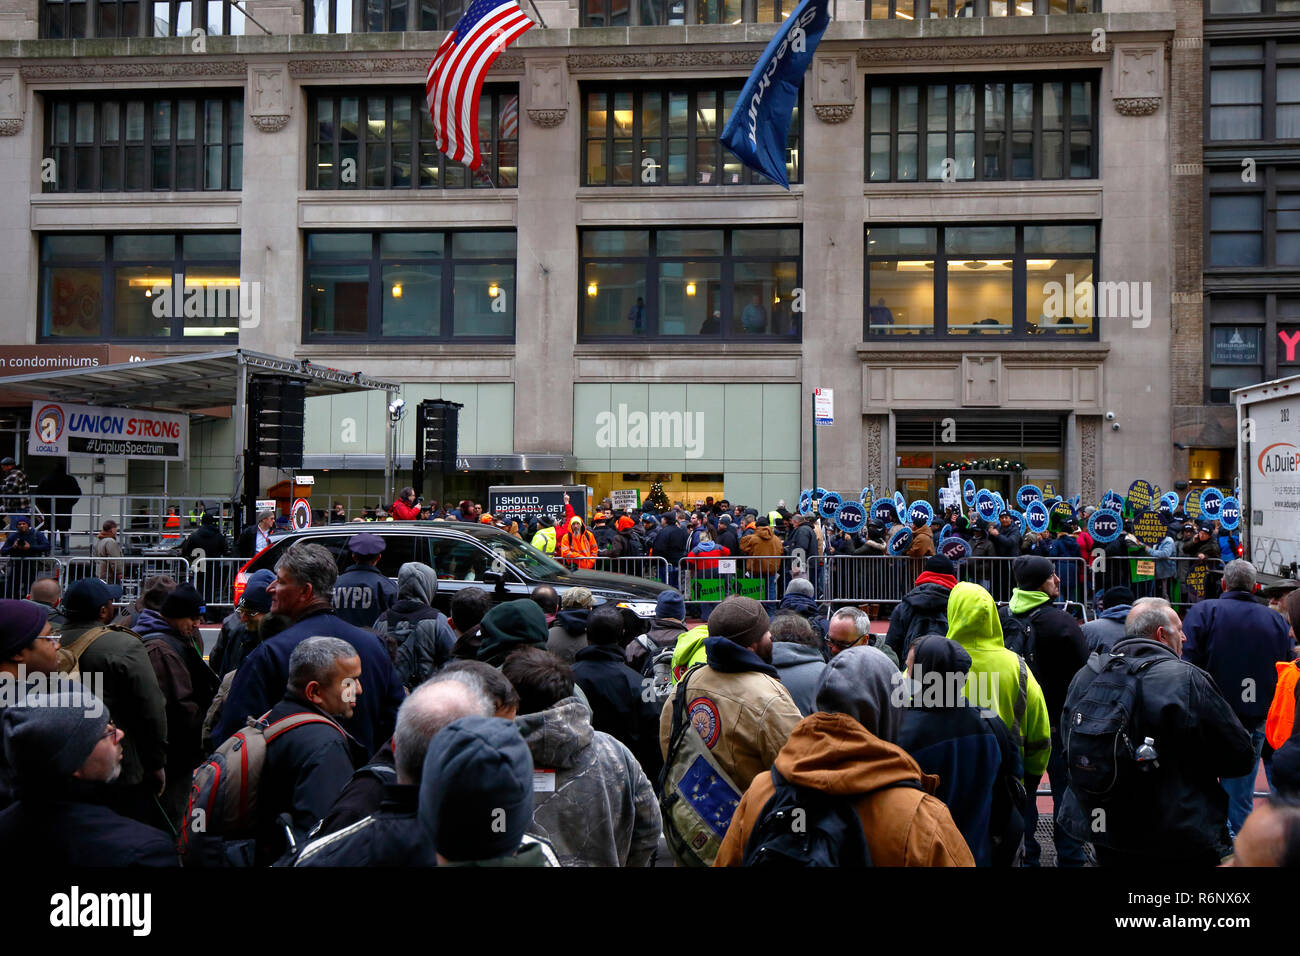 Eine Union, die die Rallye außerhalb von Charta Spektrum Büros, indem sie ihre Union busting gehalten, und irreführende Geschäftspraktiken, New York, NY Dec 5, 2018 Stockfoto